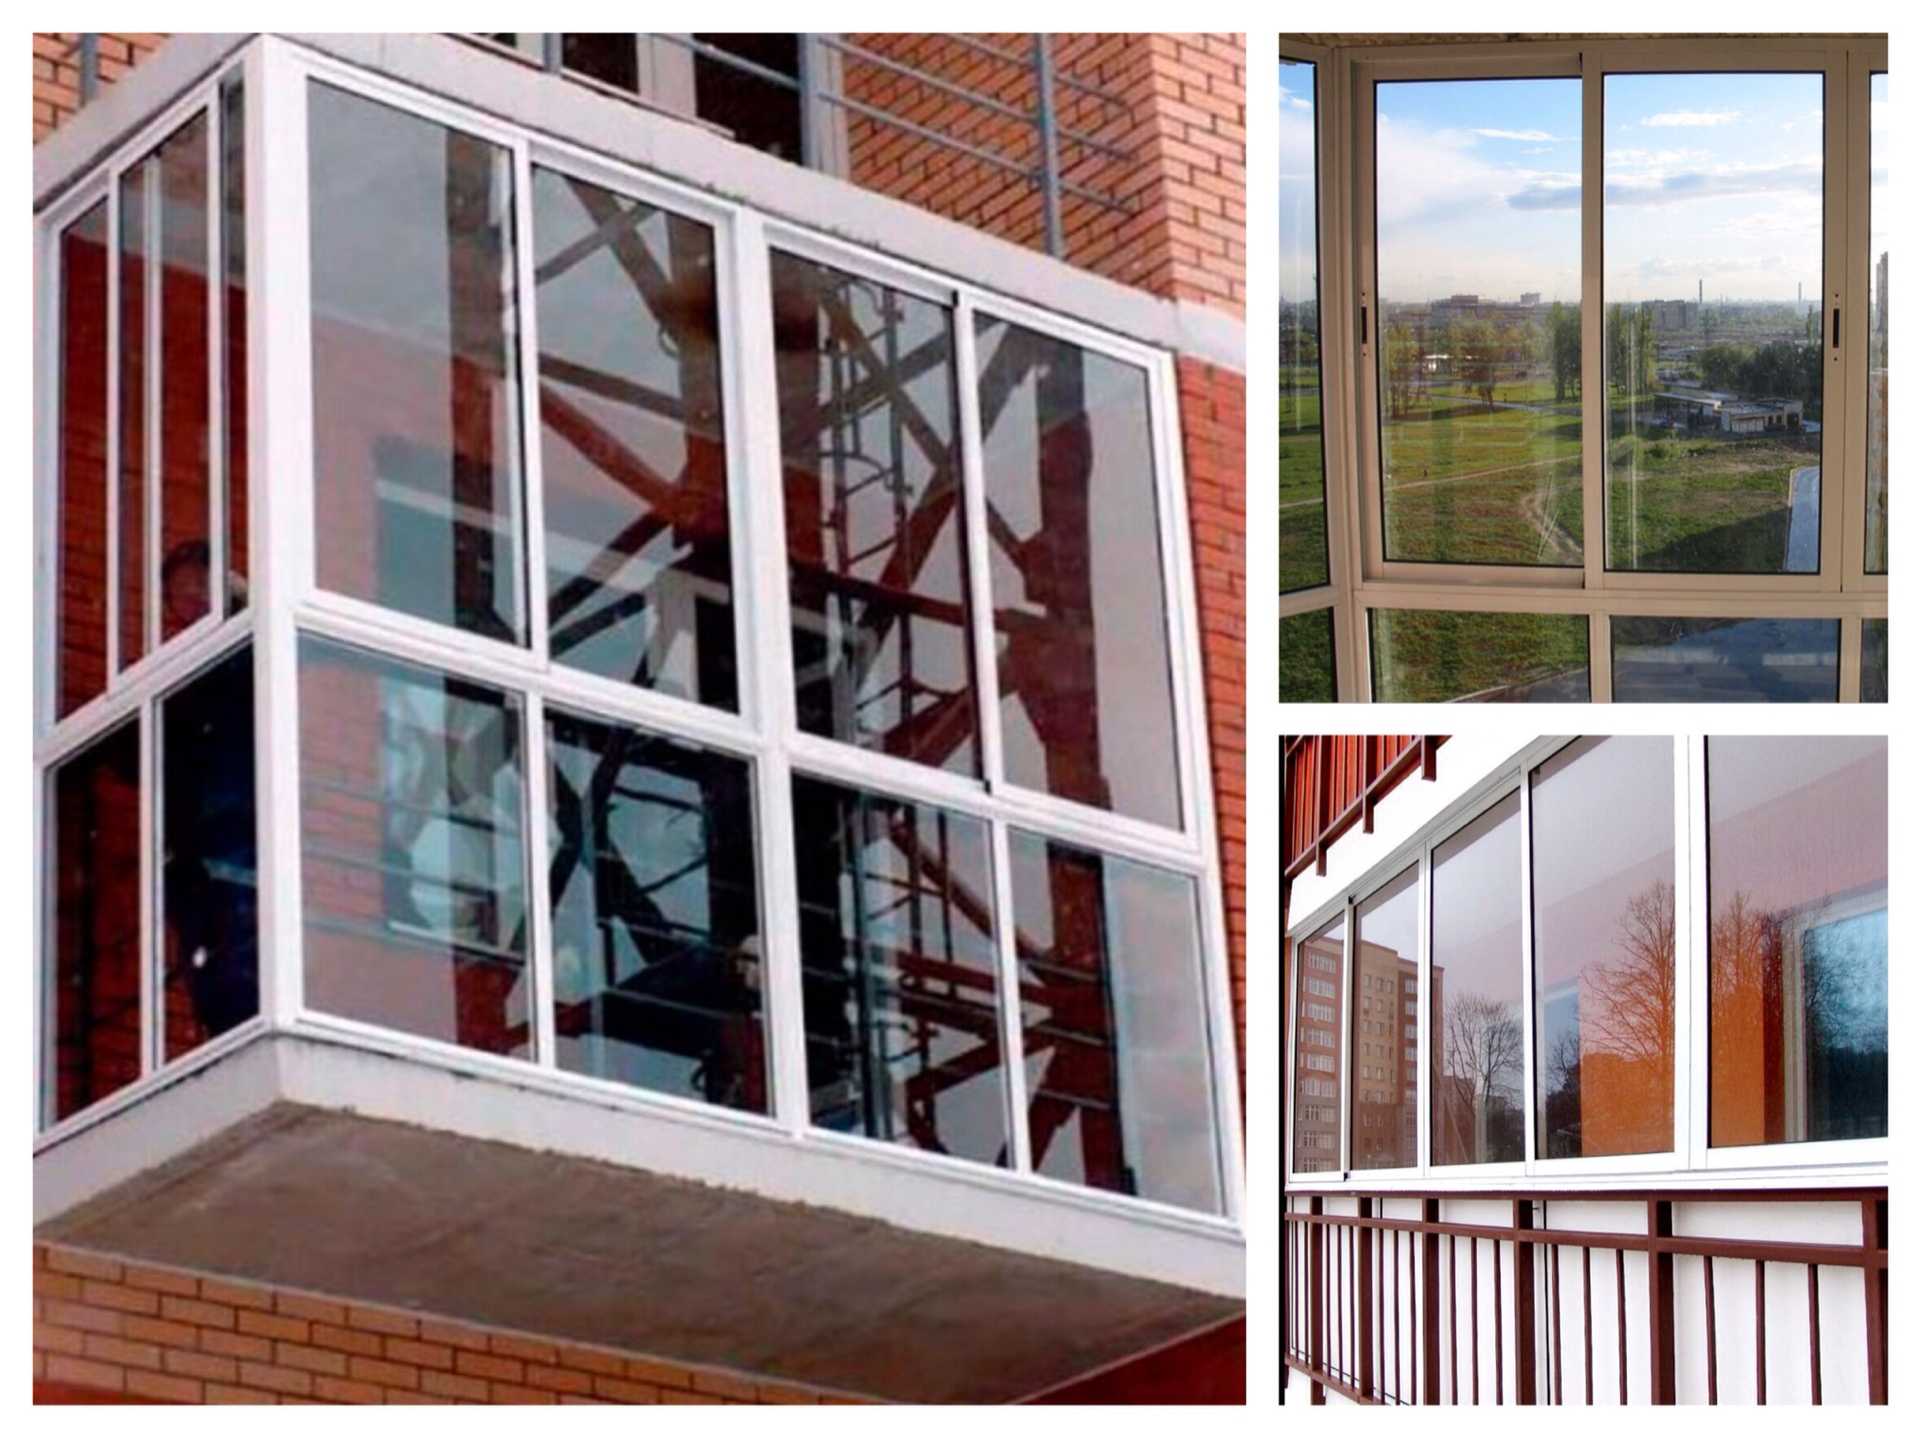 Панорамное остекление для лоджии или балкона — великолепный дизайн